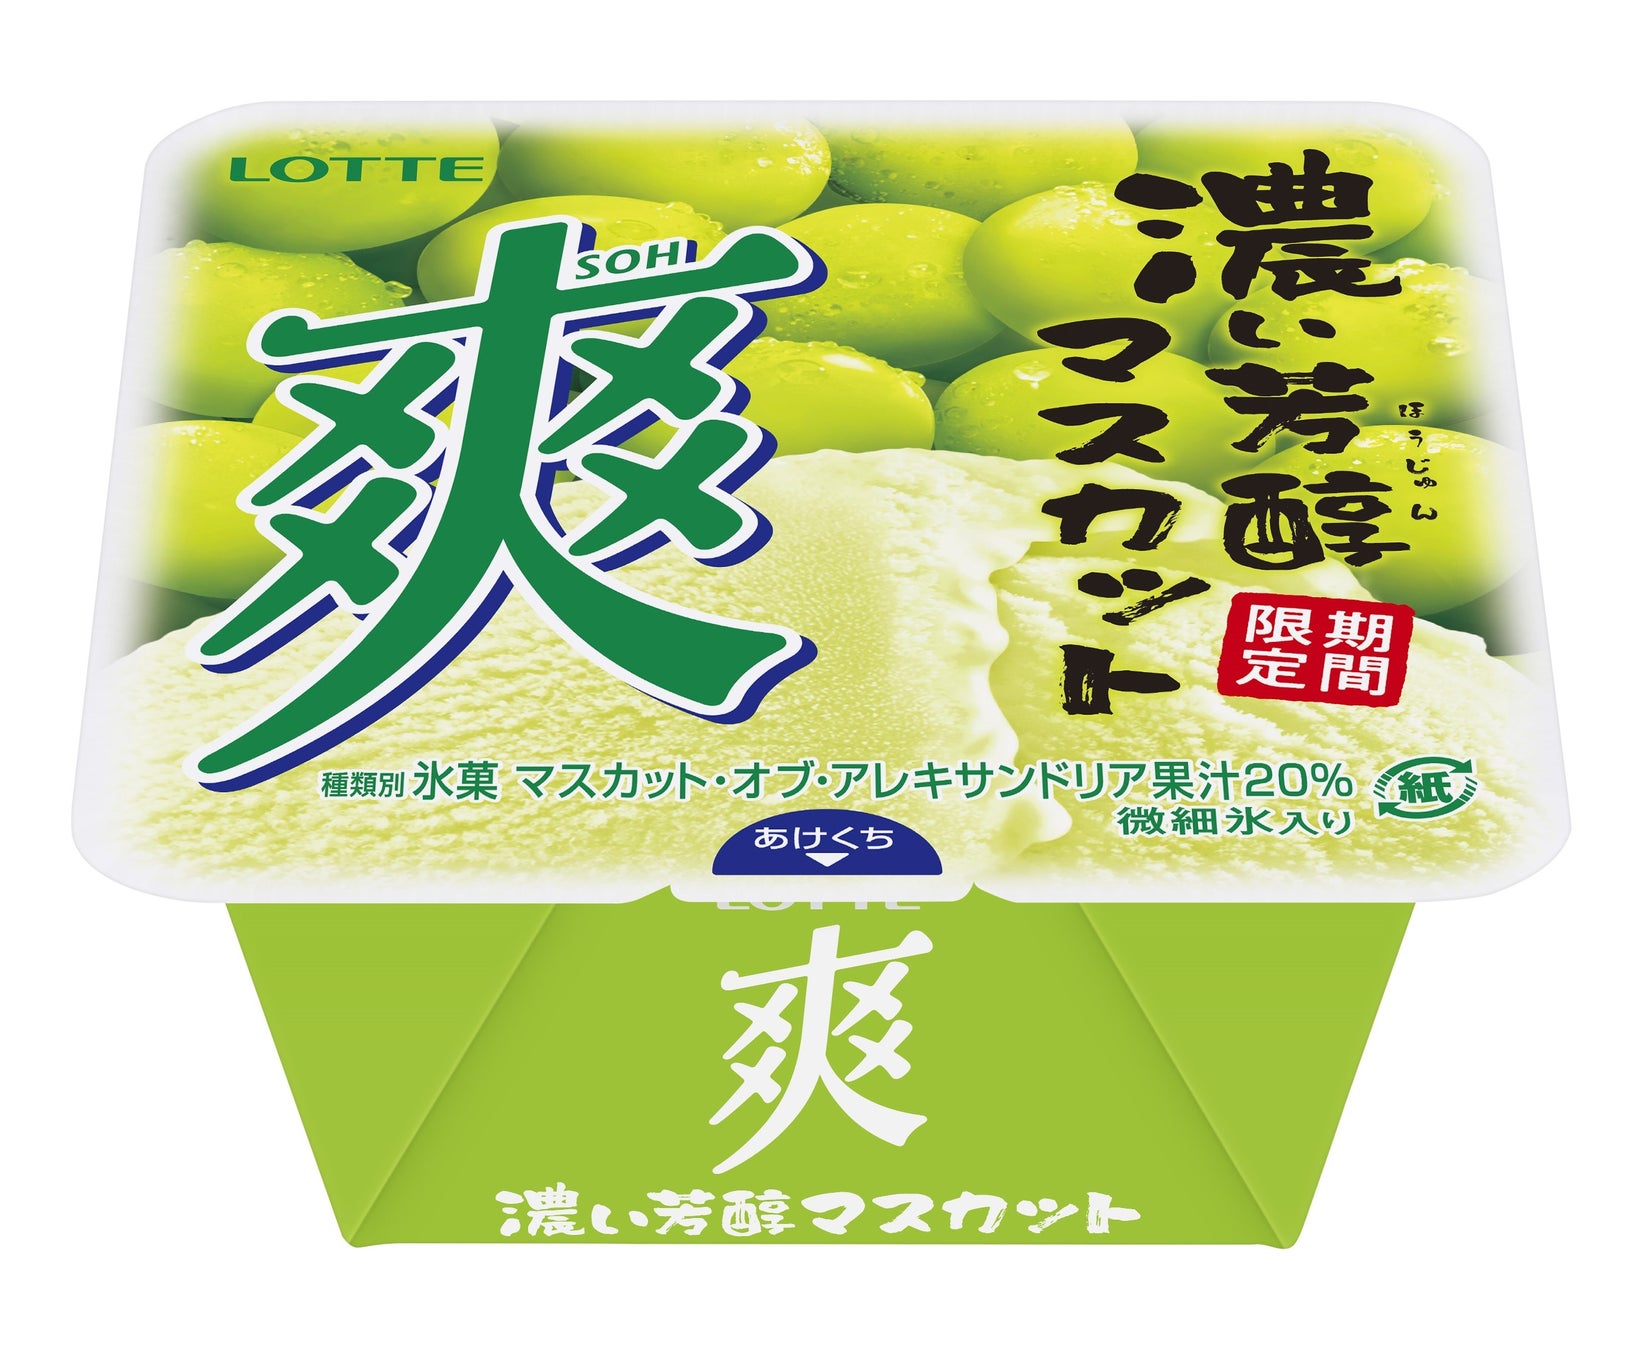 瀬戸 康史さんがエプロン姿で登場　野菜がおいしくなる「なべしゃぶ」の新ＣＭを８月２１日（月）より放送開始